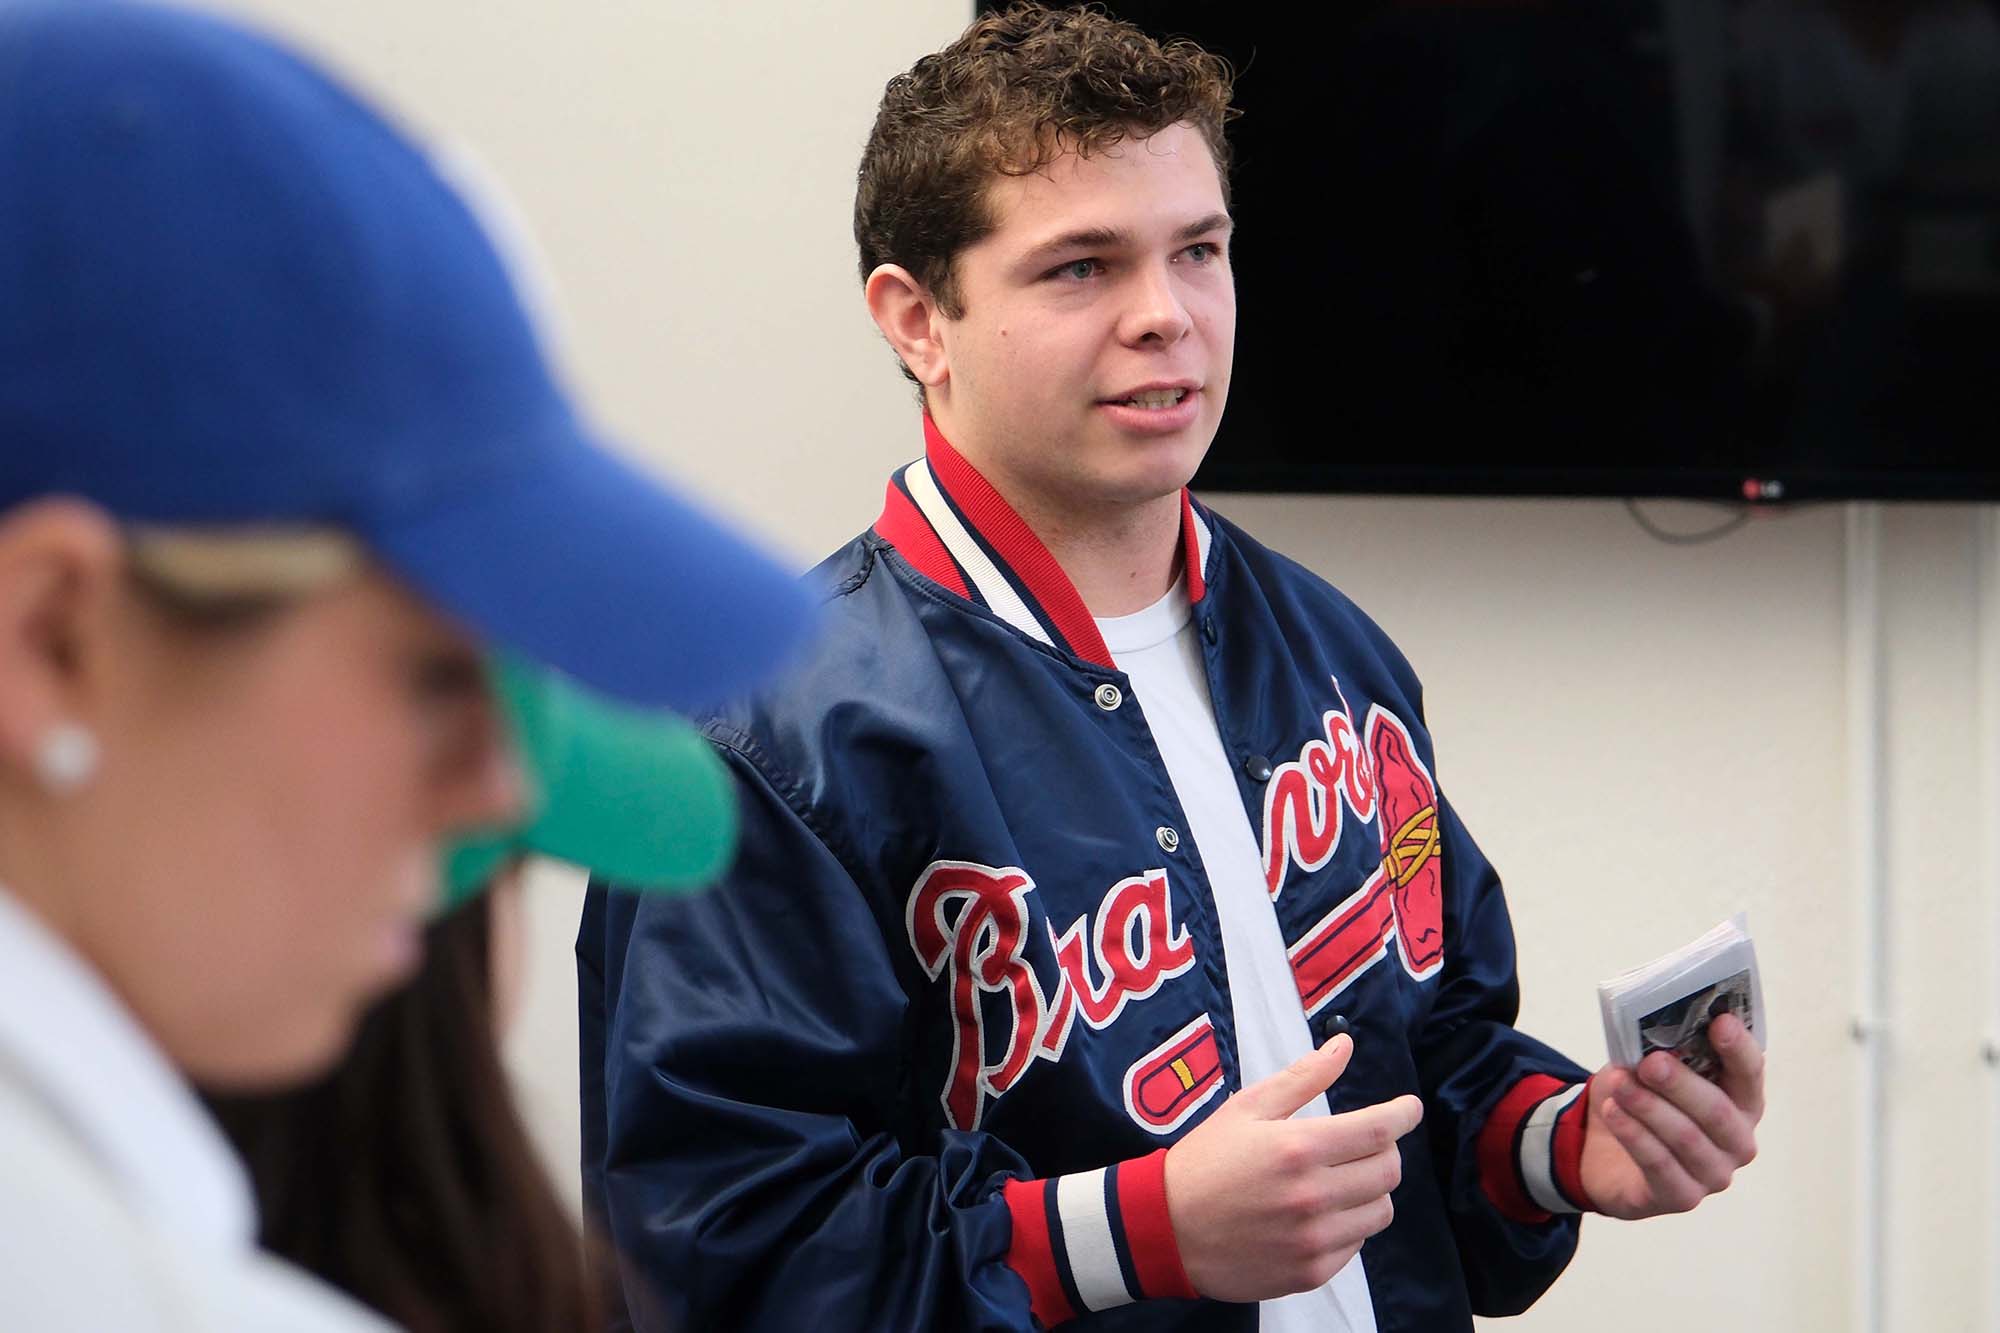 Student making presentation in Braves jacket